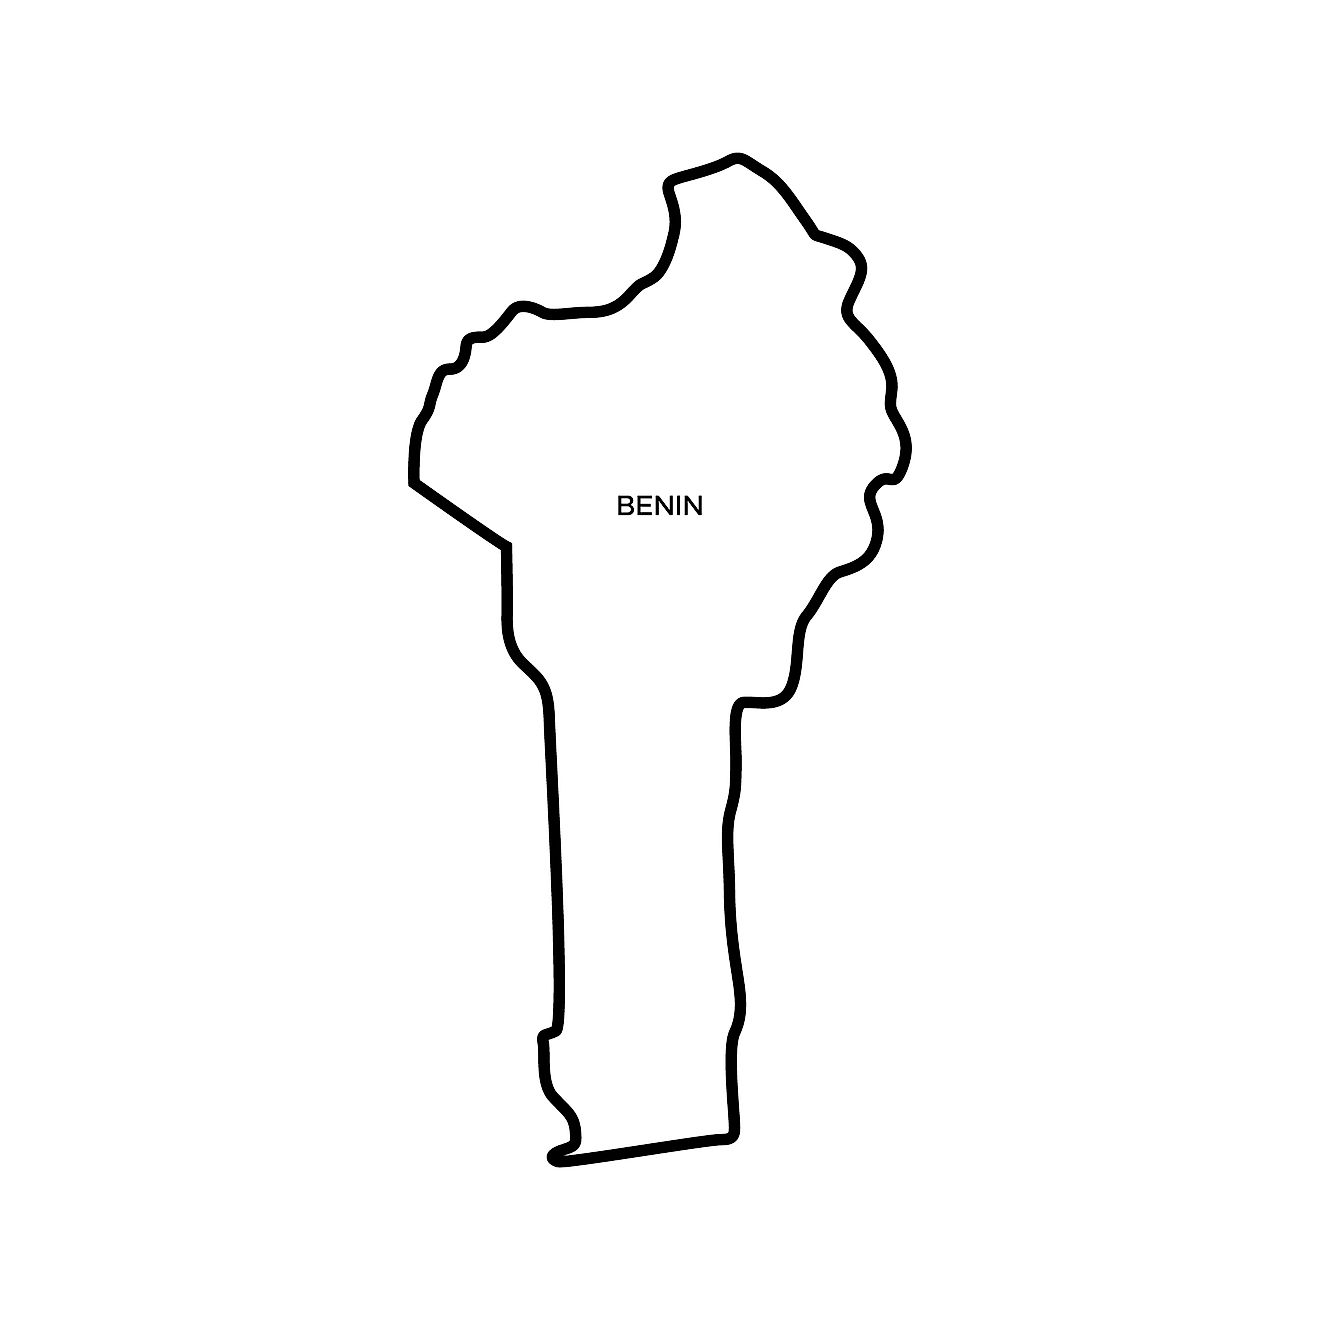 Blank outline map of Benin